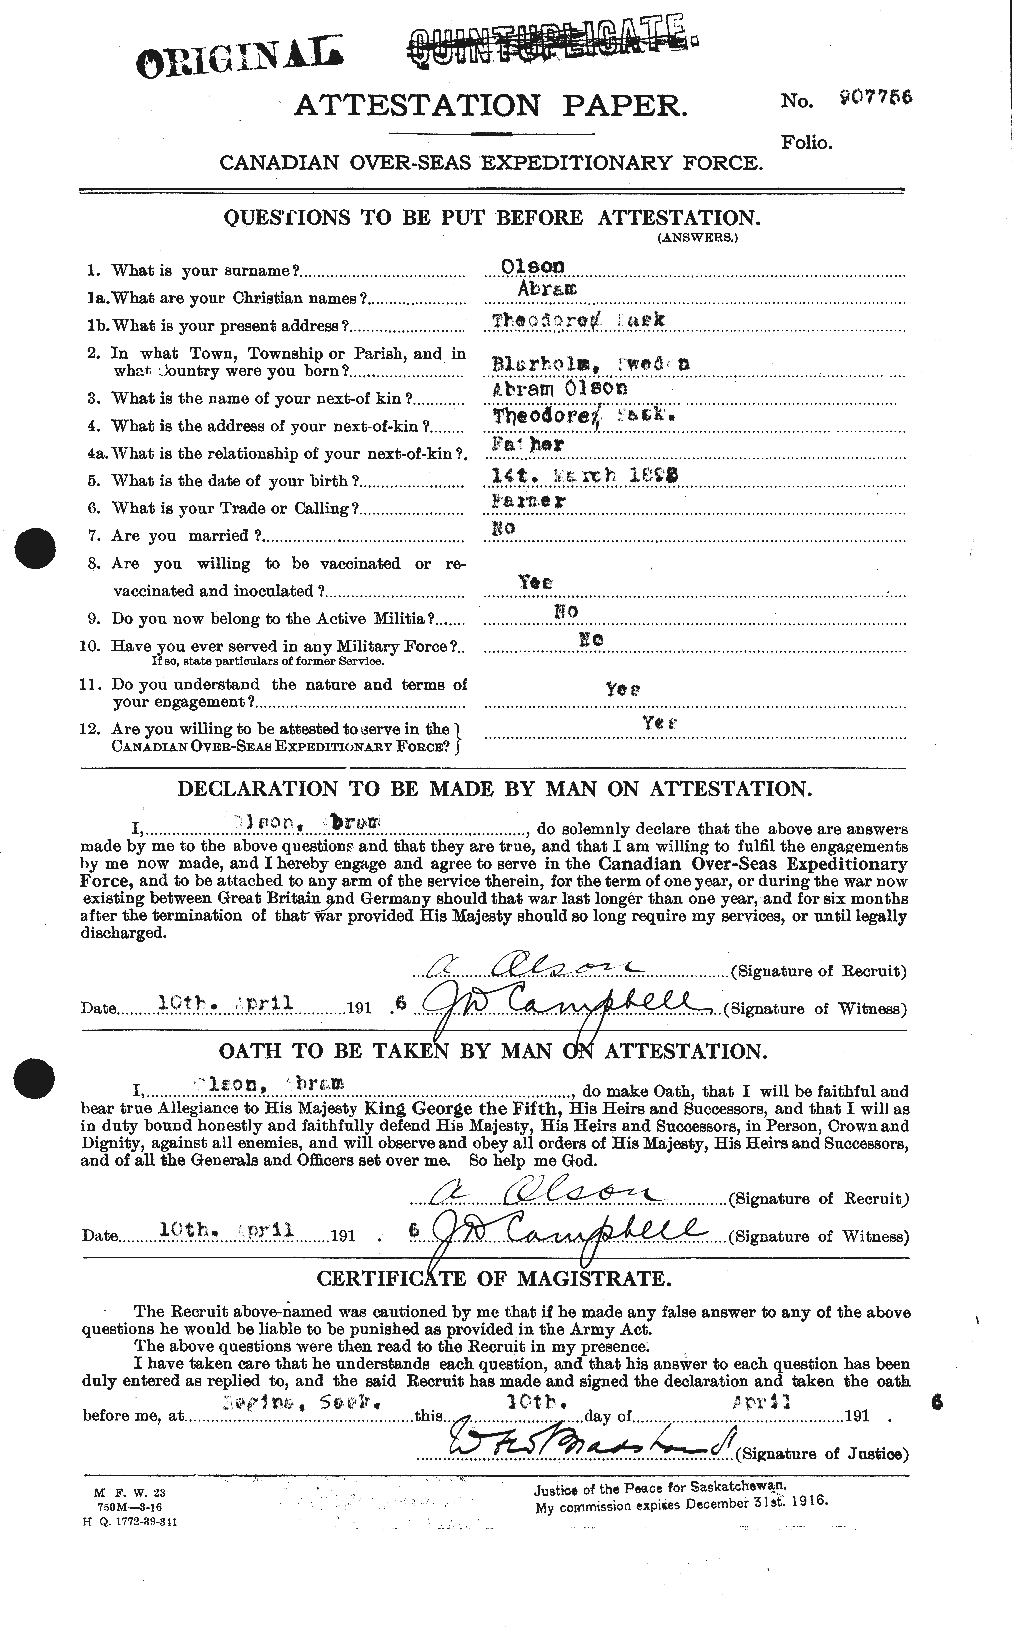 Dossiers du Personnel de la Première Guerre mondiale - CEC 557122a